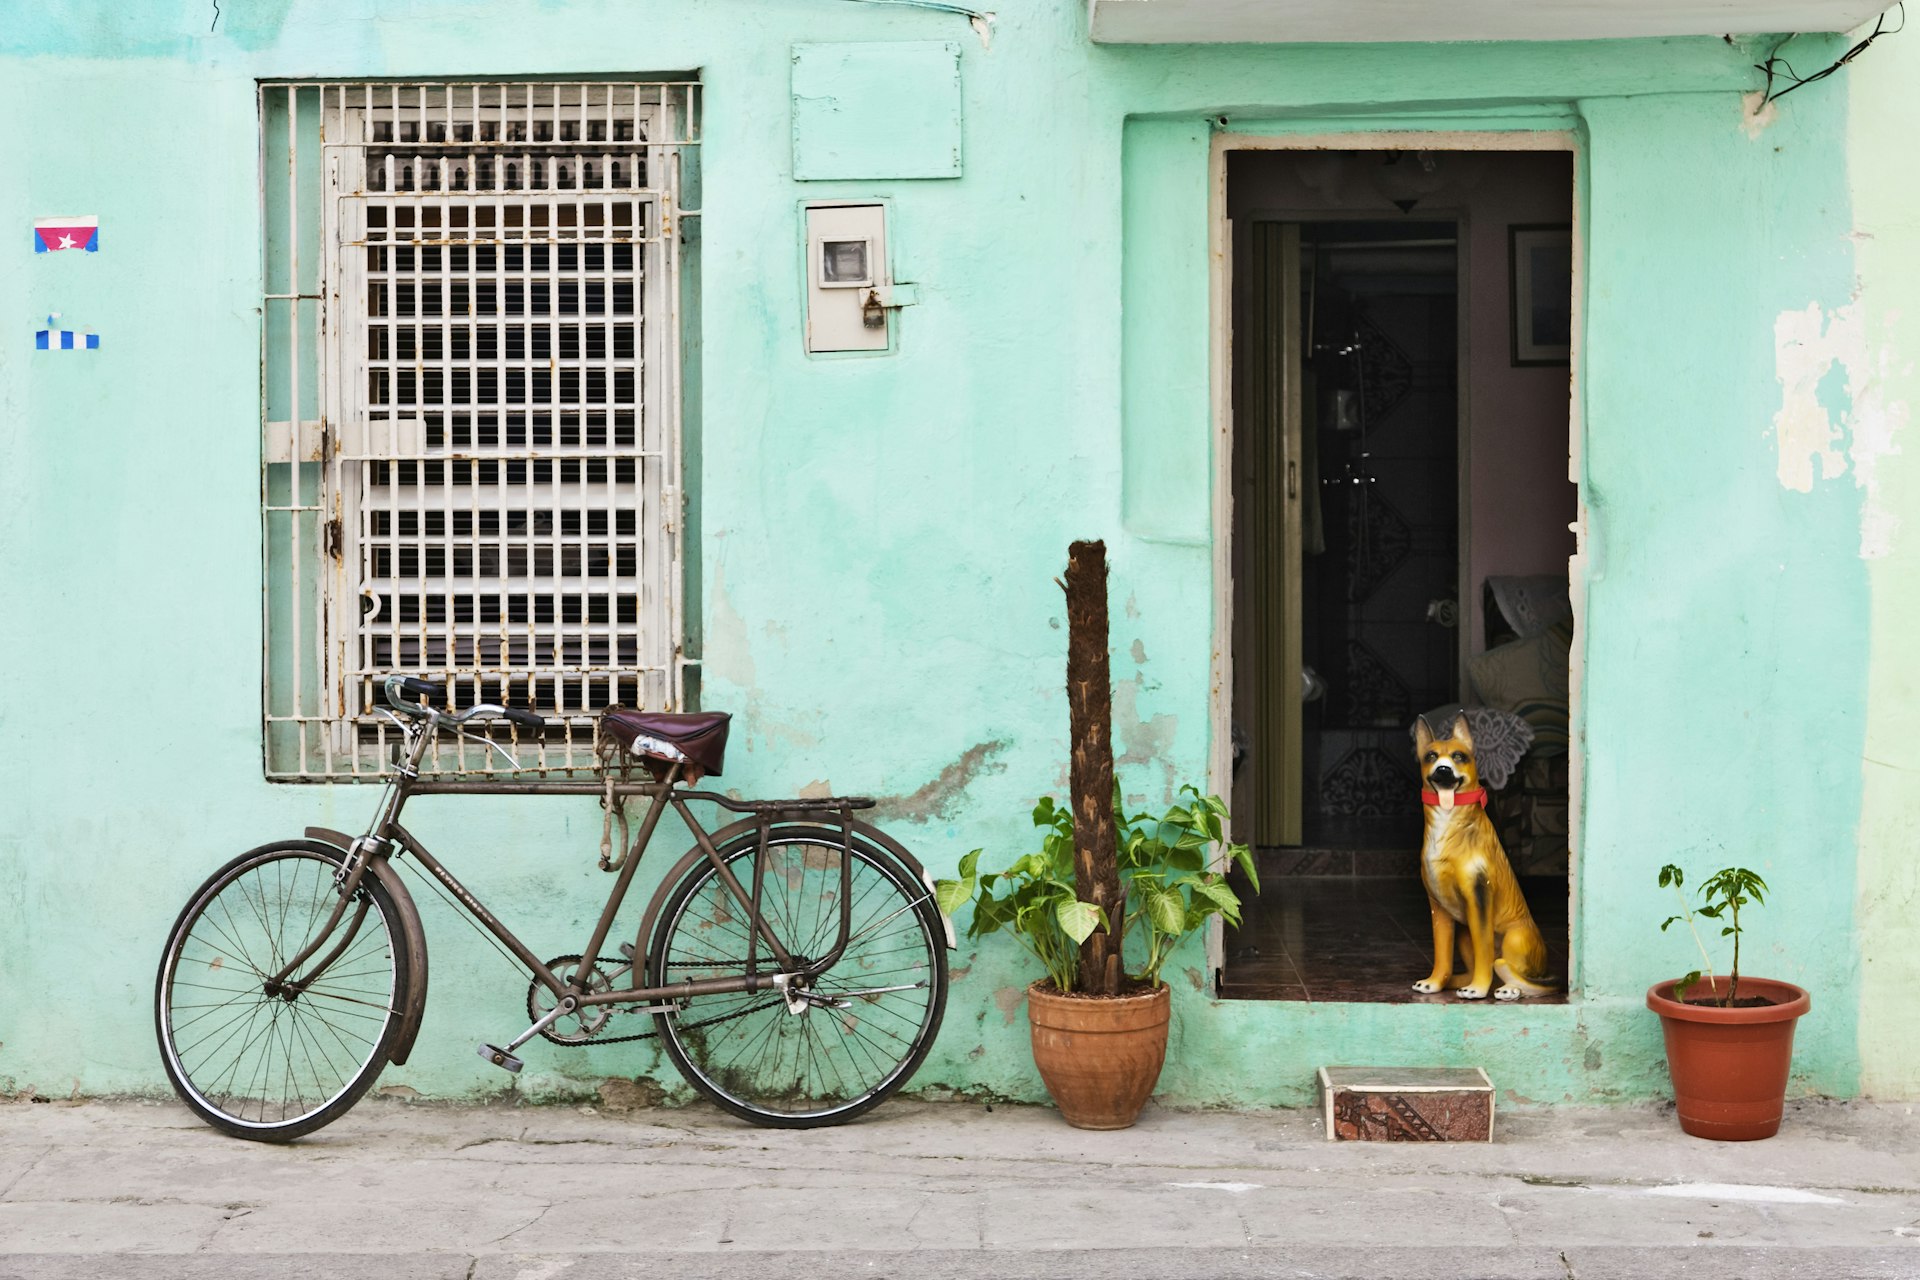 A dog in the doorway of a home in Havana, Cuba